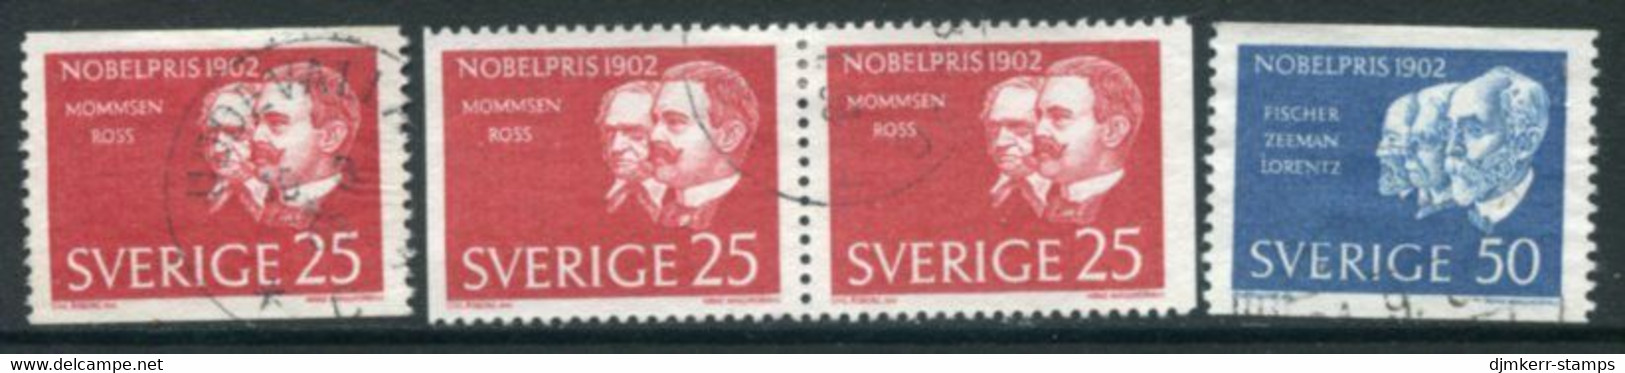 SWEDEN 1962 Nobel Laureates Of 1902 Used.  Michel 500-01 - Usati